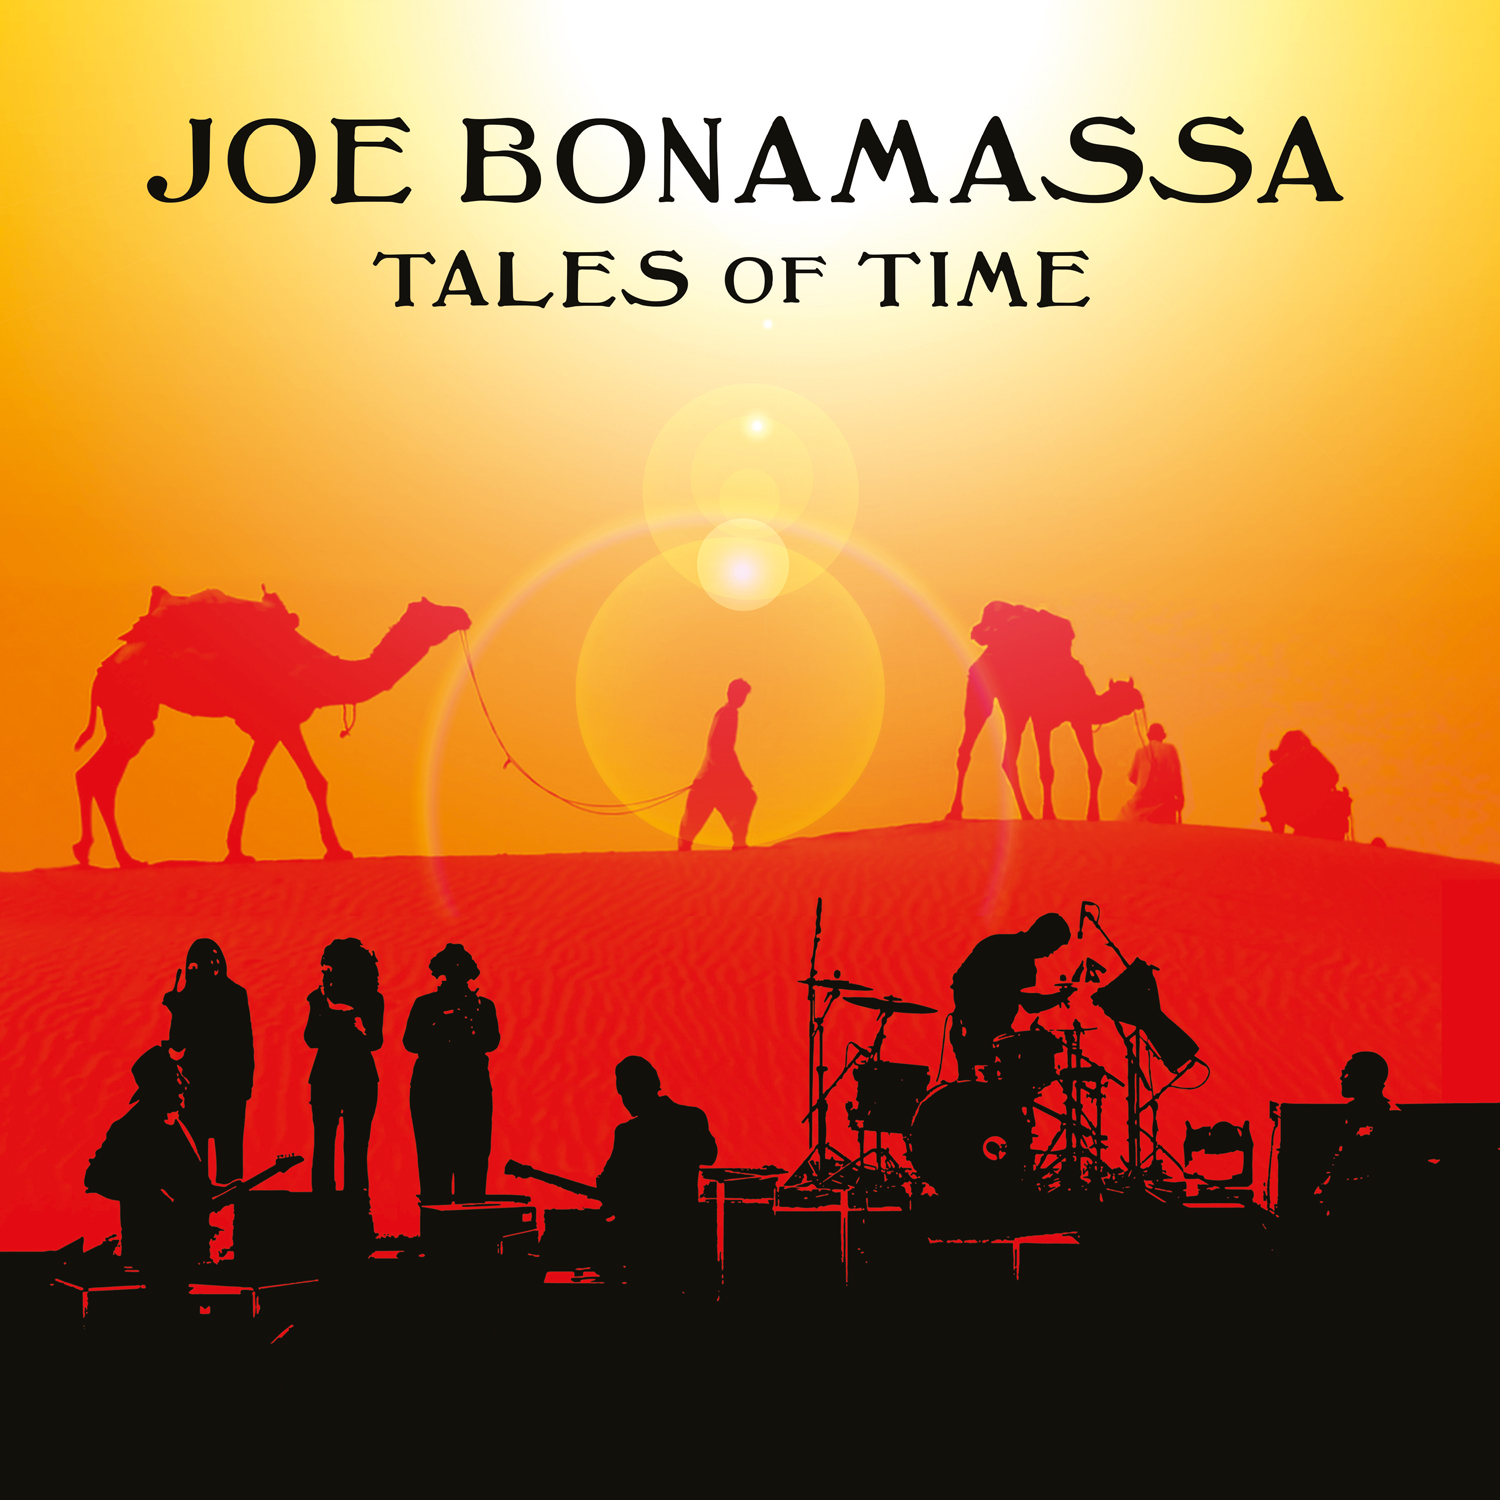 Joe Bonamassa veröffentlicht eine neue bahnbrechende Live-Performance aus dem Red Rocks Amphitheater - 'Tales Of Time' erschein am 14. April 2023